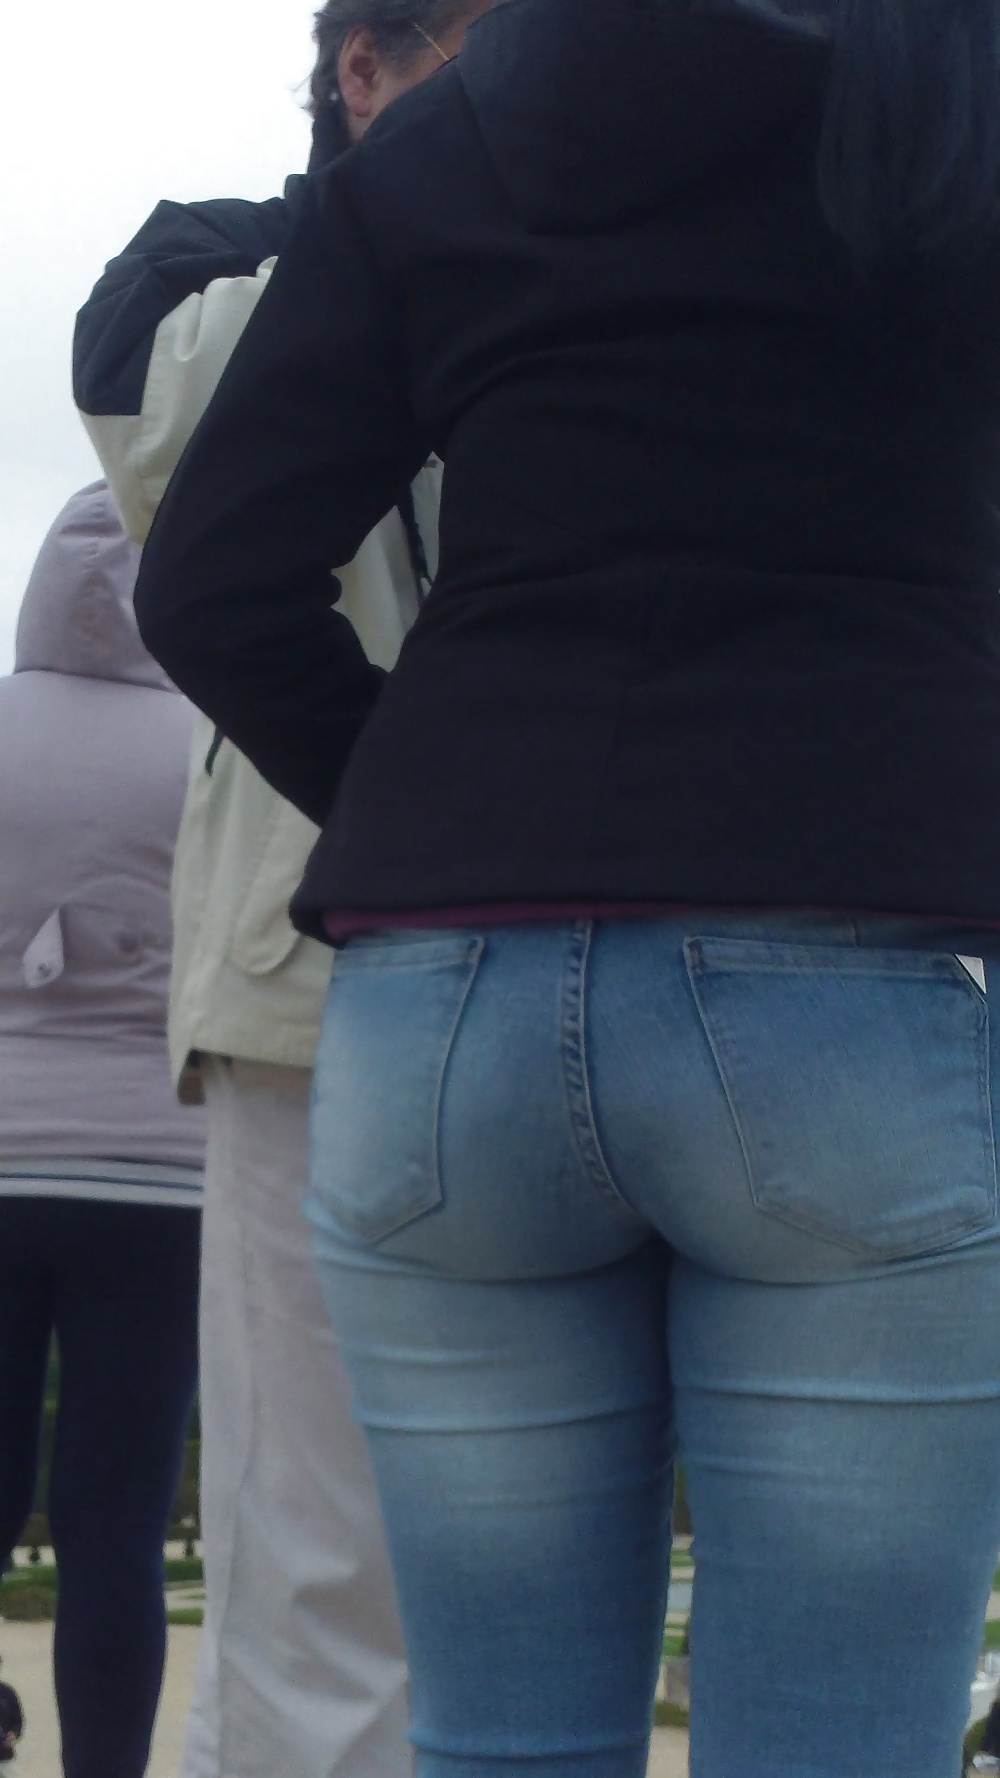 Popular teen girls ass & butt in jeans Part 6 #32010185